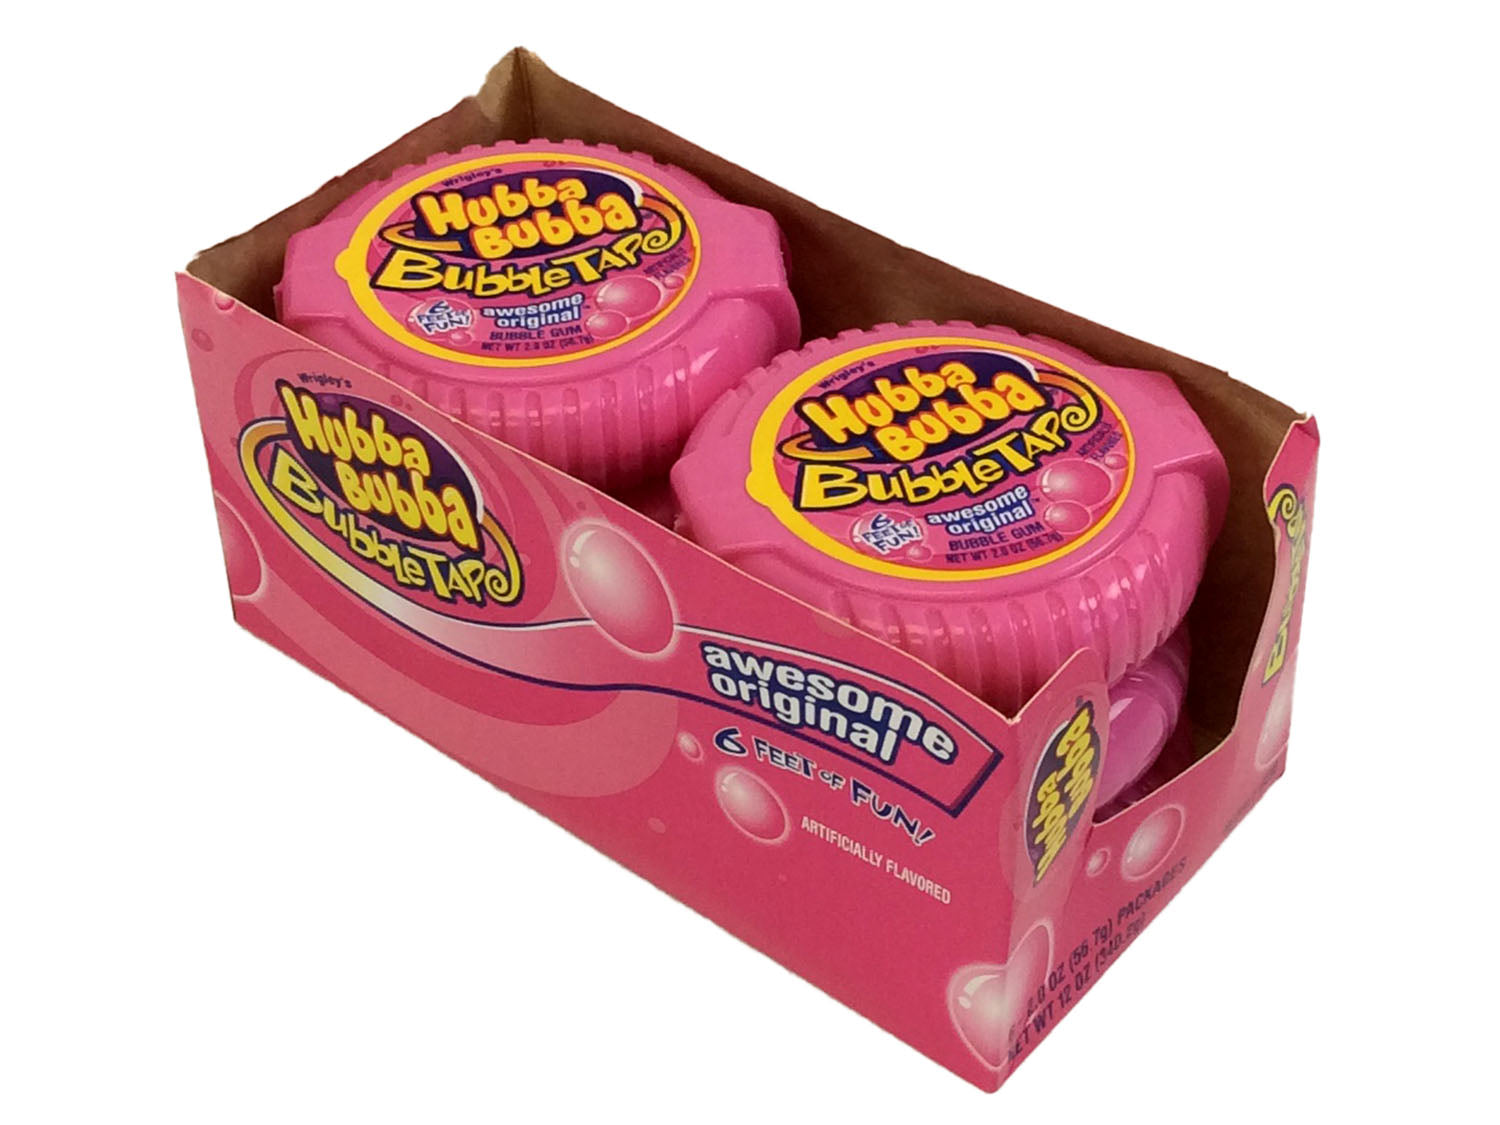 Bubble Tape Original Flavor - box of 6